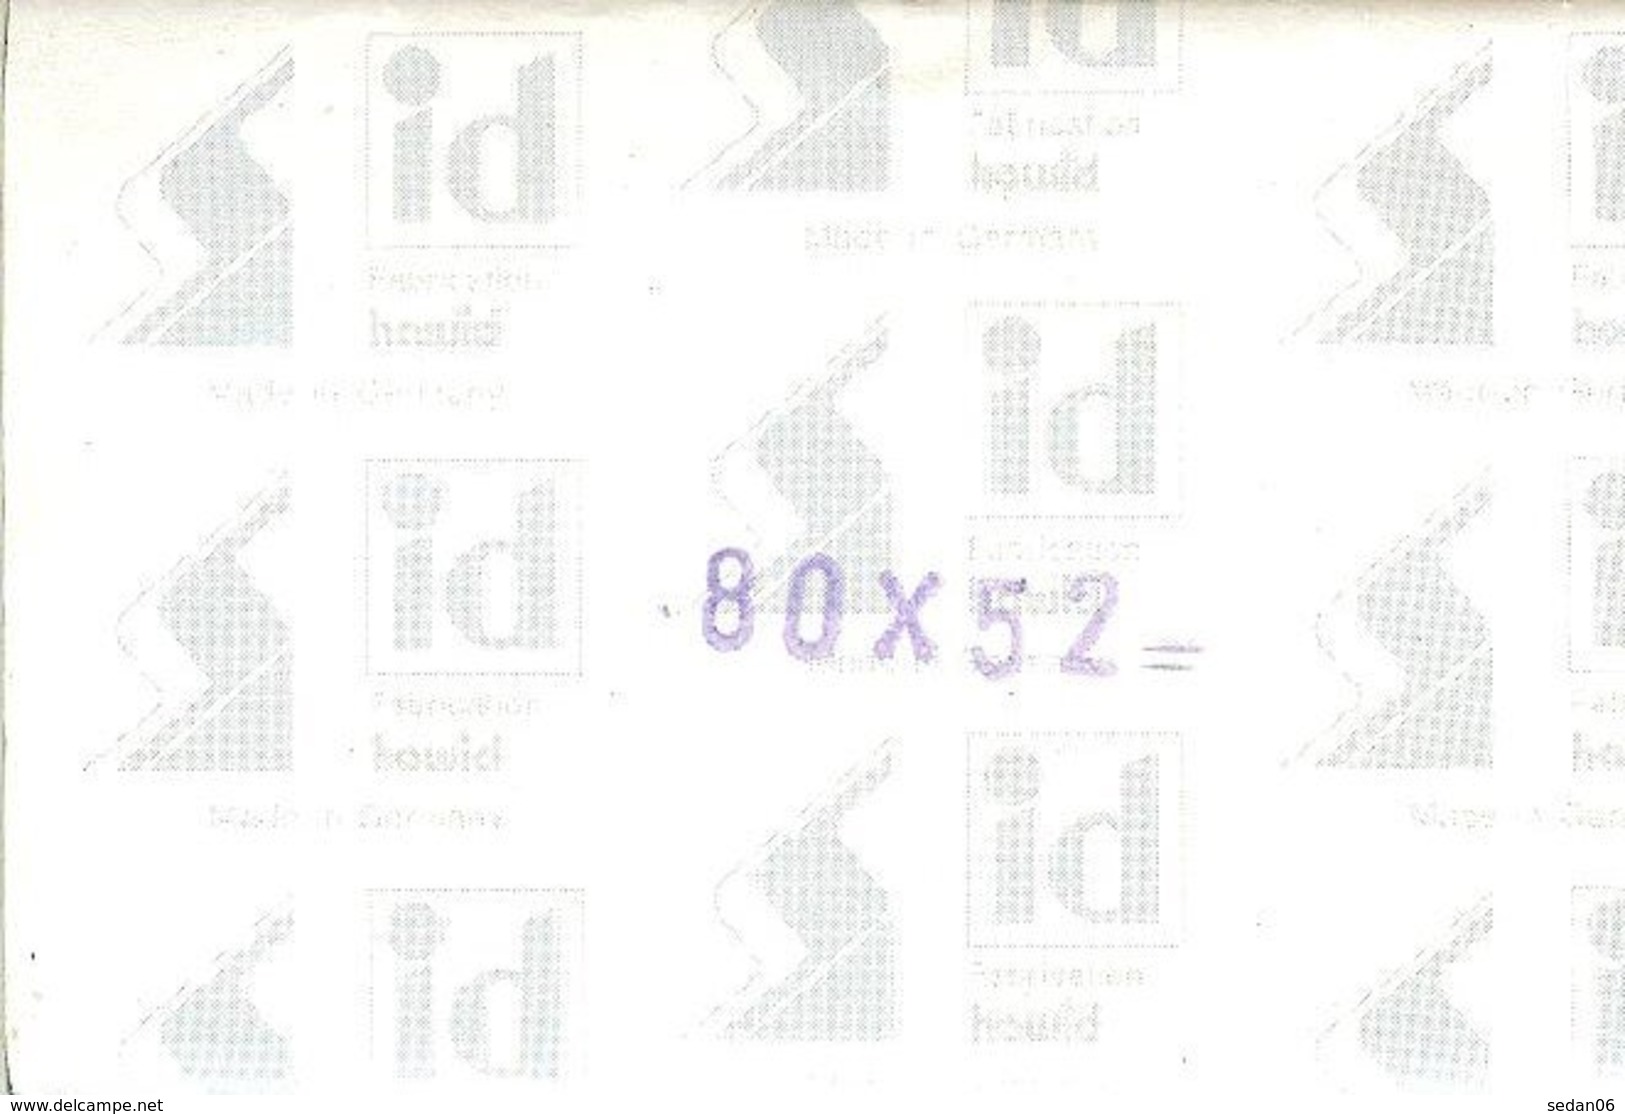 I.D. - Pochettes 80x52 Fond Noir (double Soudure) - Bandes Cristal